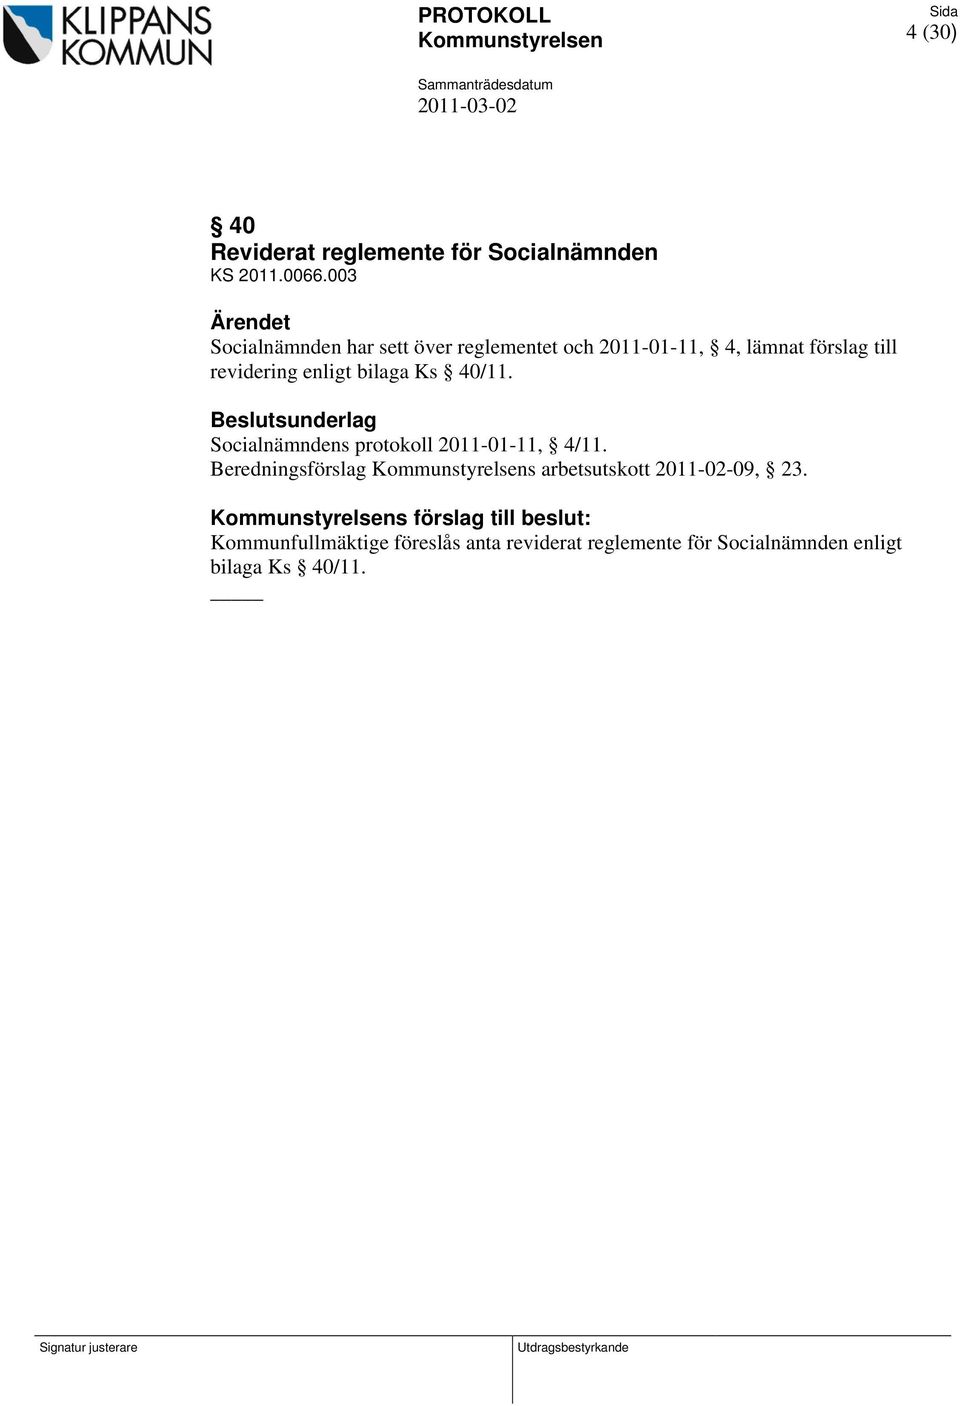 Beslutsunderlag Socialnämndens protokoll 2011-01-11, 4/11. Beredningsförslag Kommunstyrelsens arbetsutskott 2011-02-09, 23.